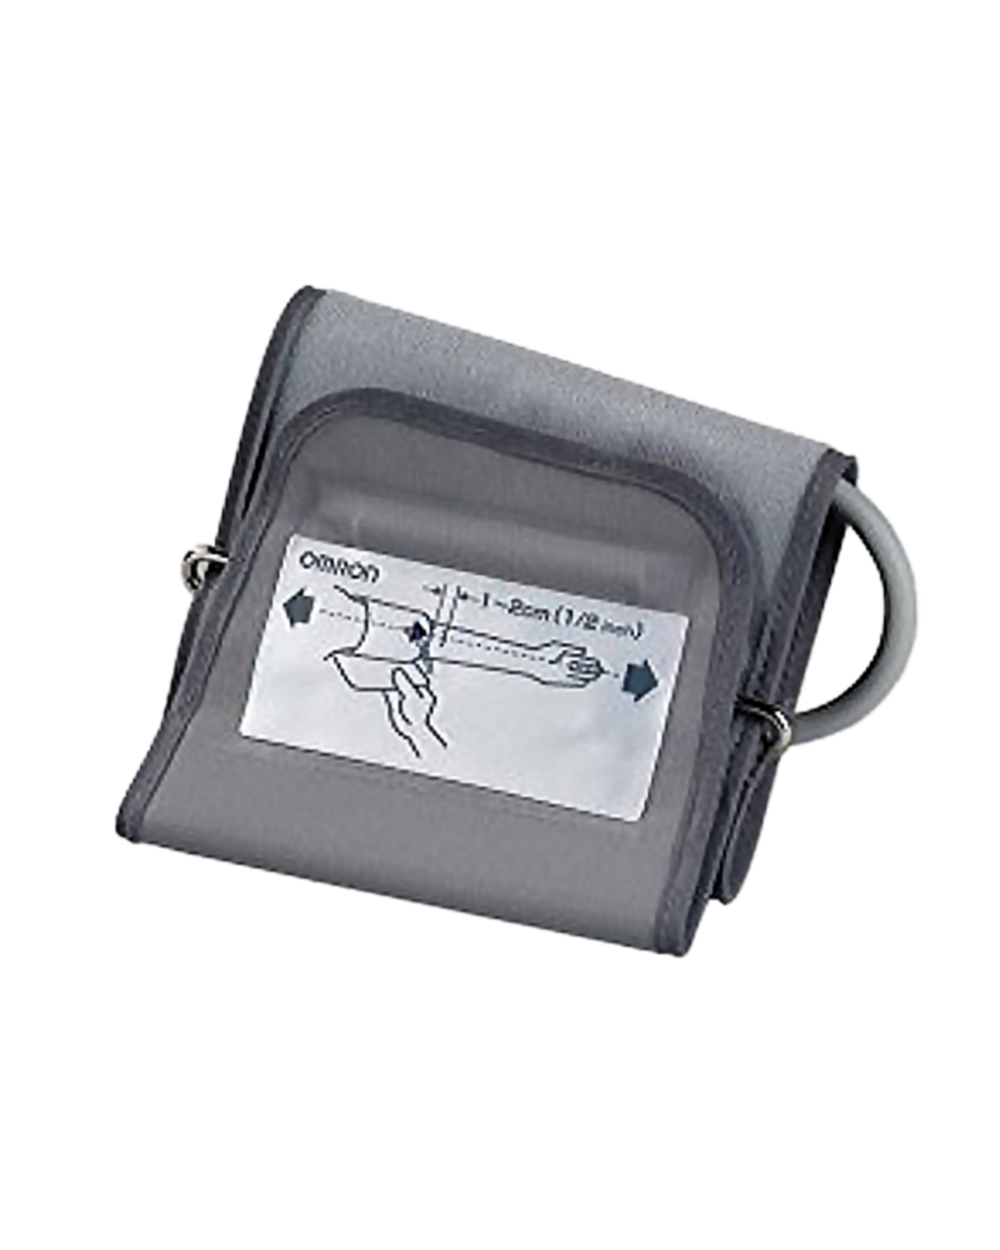 Omron HEM-432c Manual Digital Blood Pressure Monitor - Special Buy